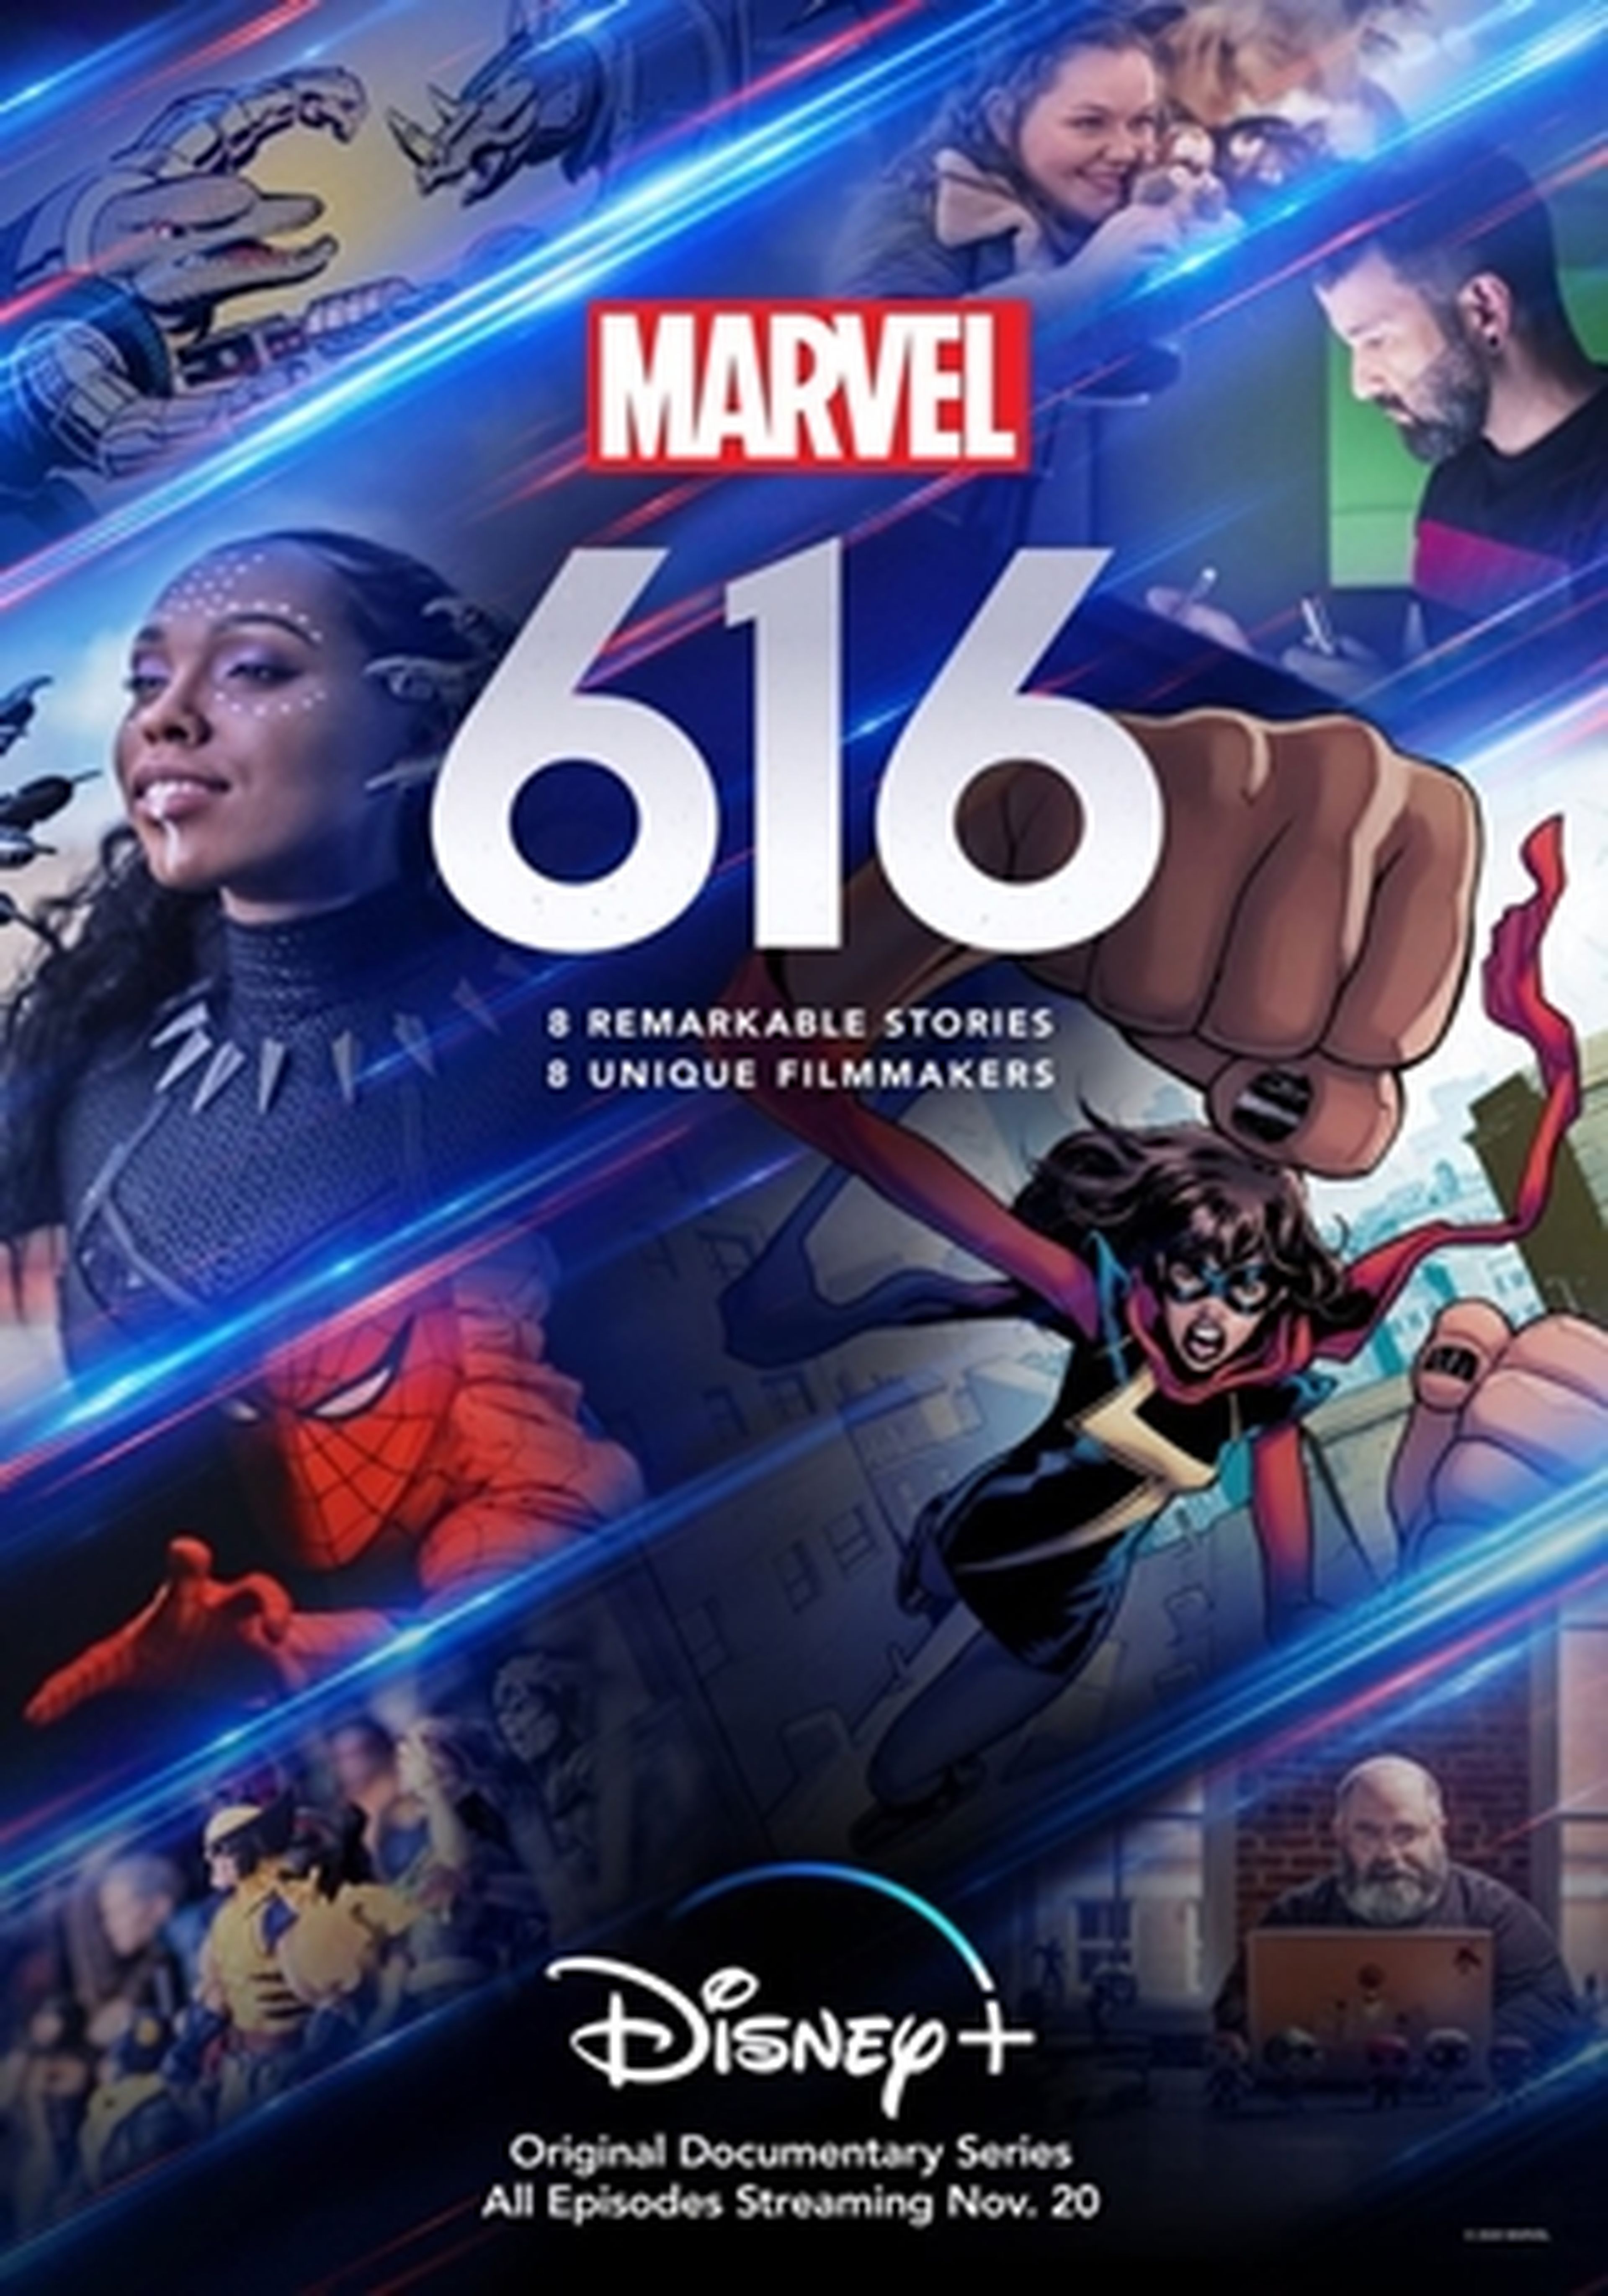 Marvel 616 cartel